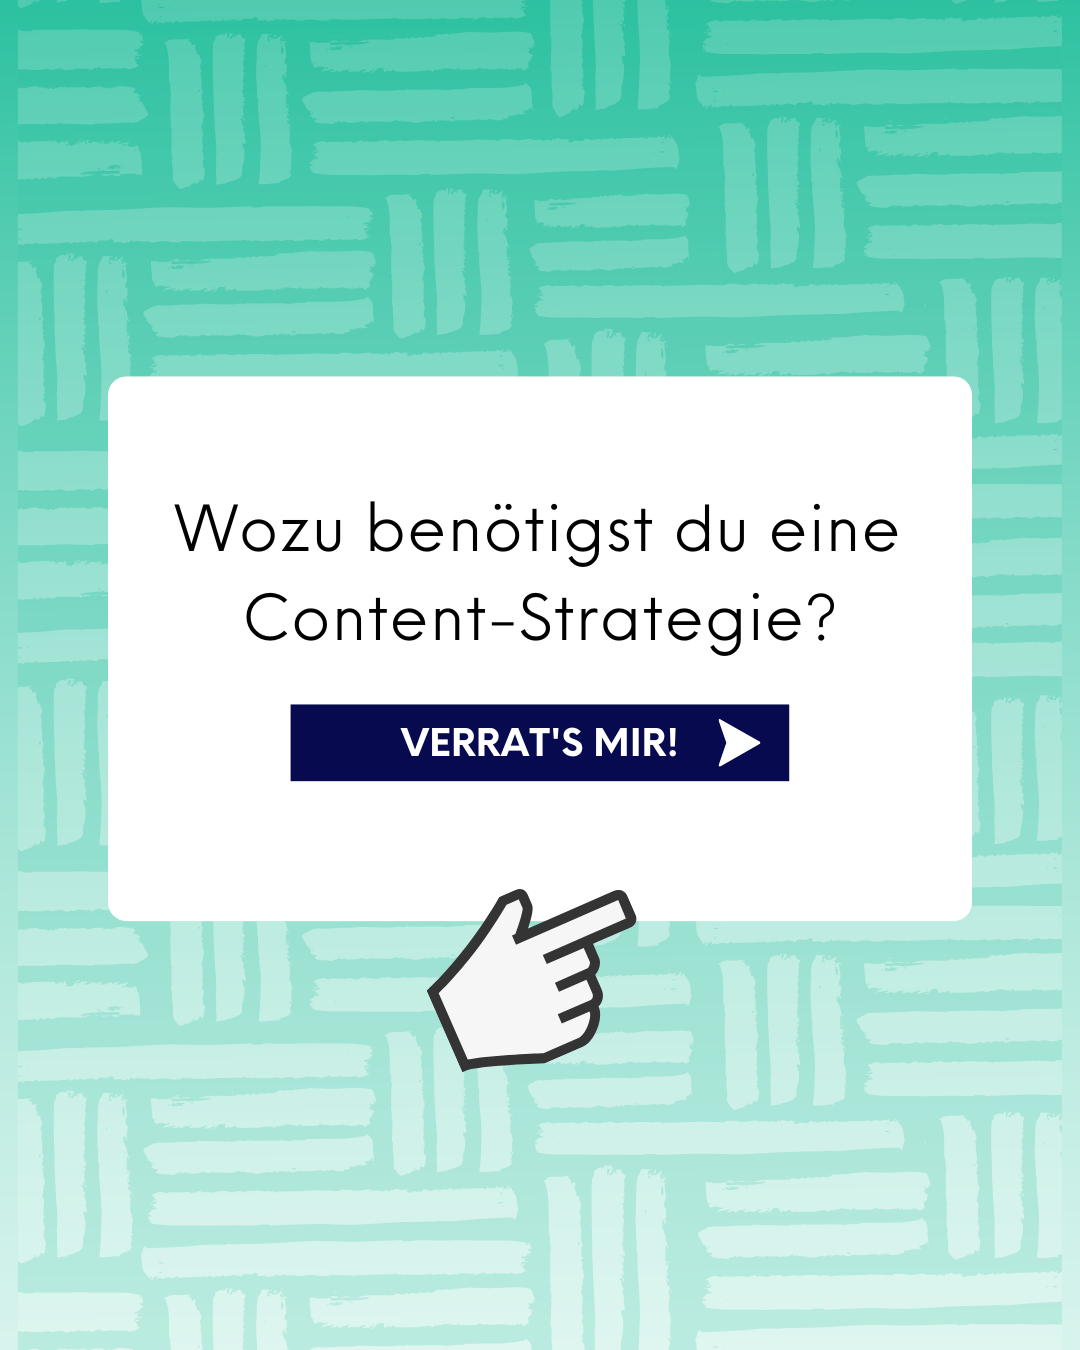 Viele Marketer und Kommunikatoren werden dir bereits eine Vielzahl von Argumenten genannt haben, warum du eine Content-Strategie brauchst. 